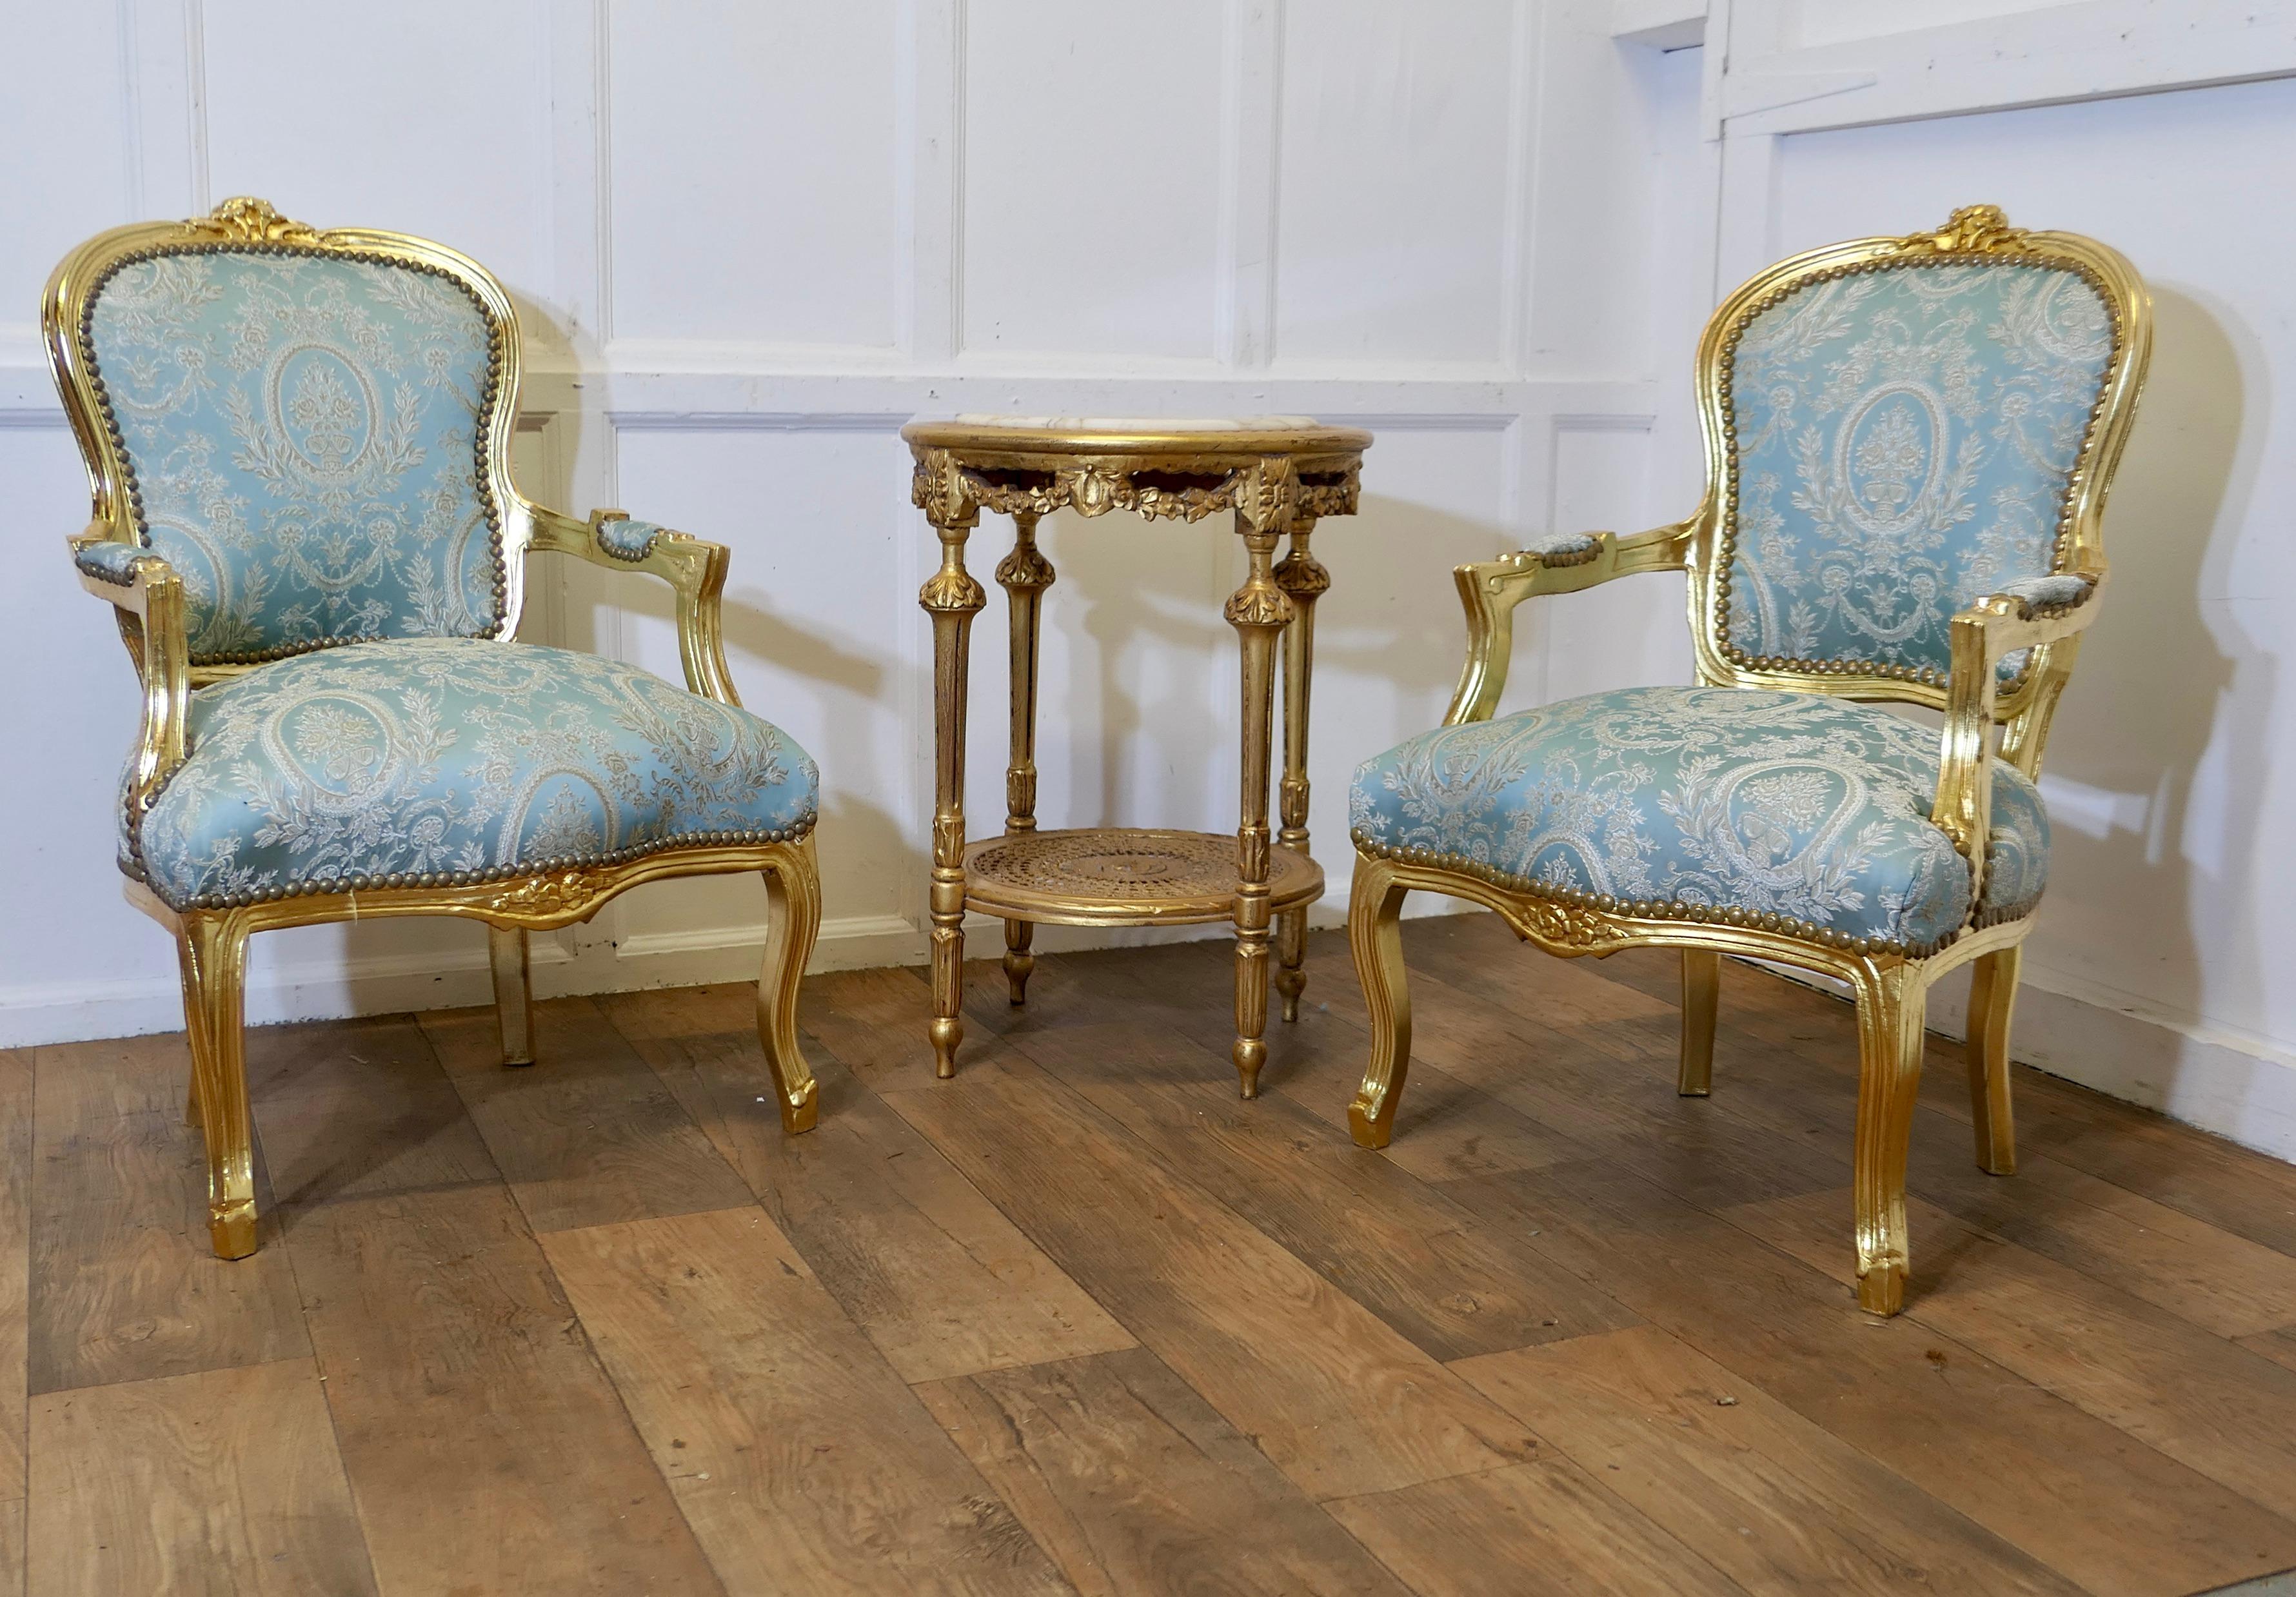 Ein hervorragendes Paar französischer vergoldeter Salonstühle des 19.

Diese eleganten Stühle wurden neu lackiert und mit blassblauem Seidendamast gepolstert. Sie haben eine schlangenförmige Front und geschnitzte Details auf dem Holz. 
Ein